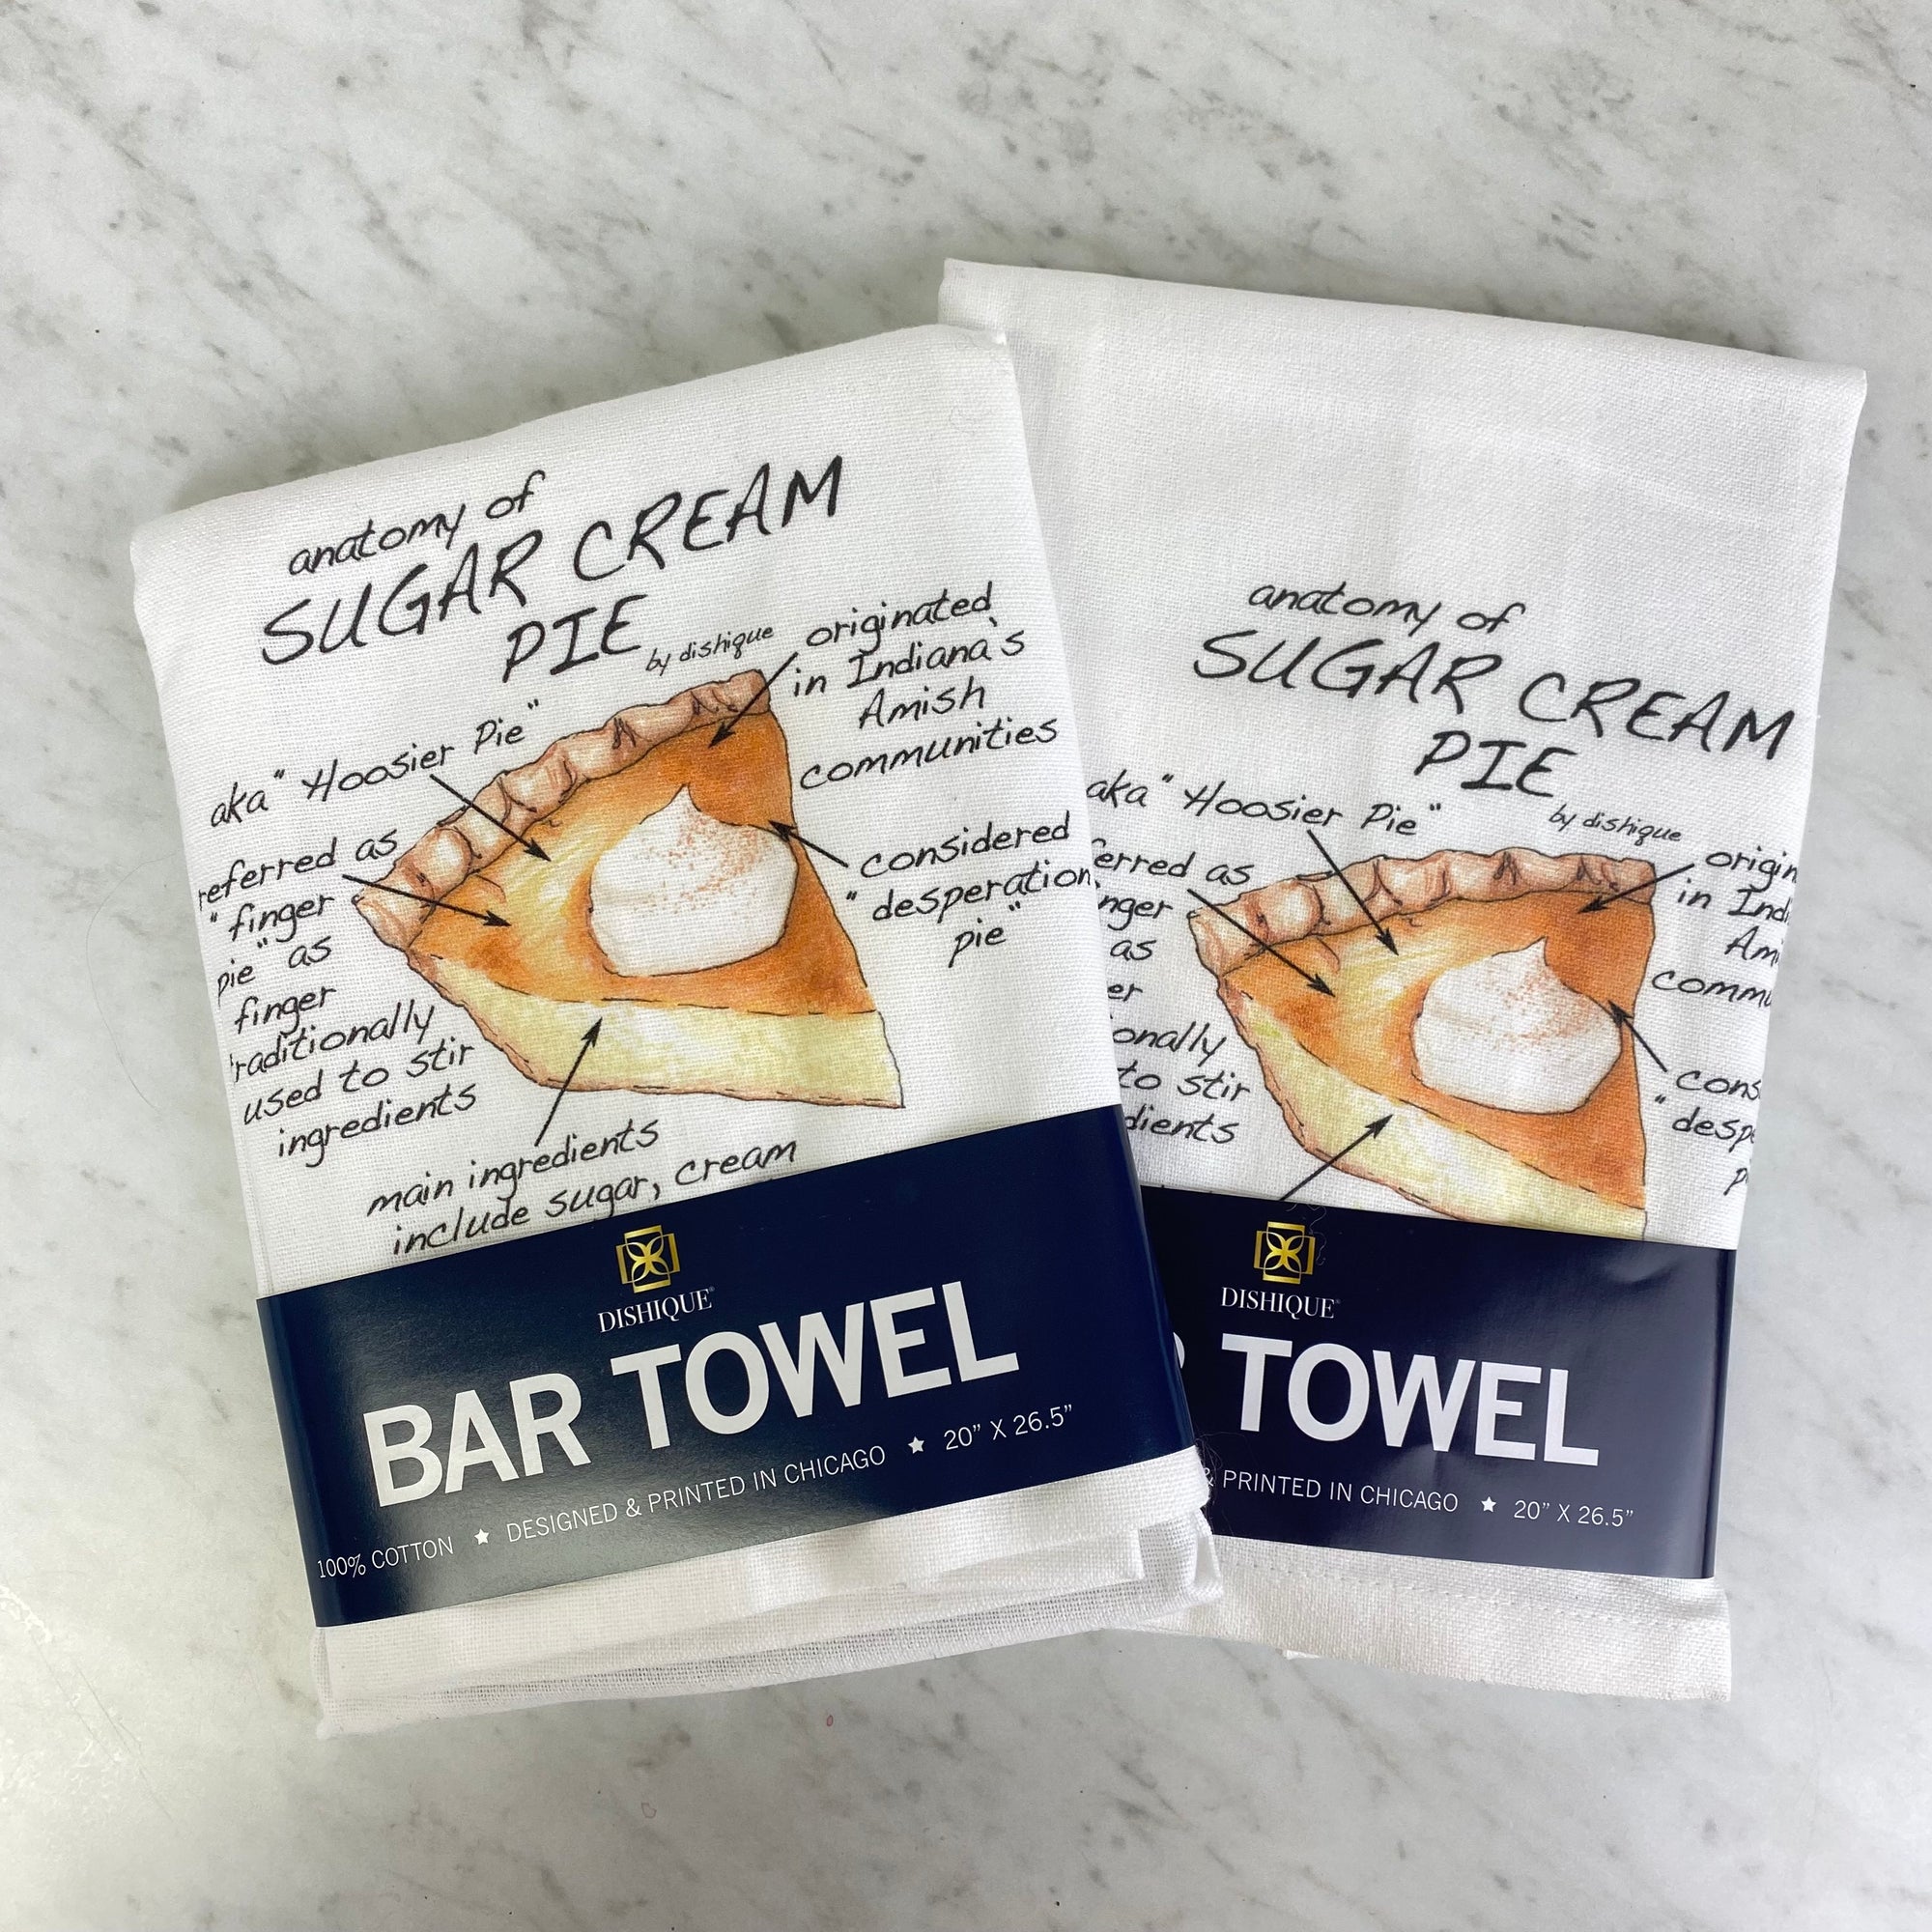 Discontinued towel bundle - Anatomy of Sugar Cream Pie - 2 tow